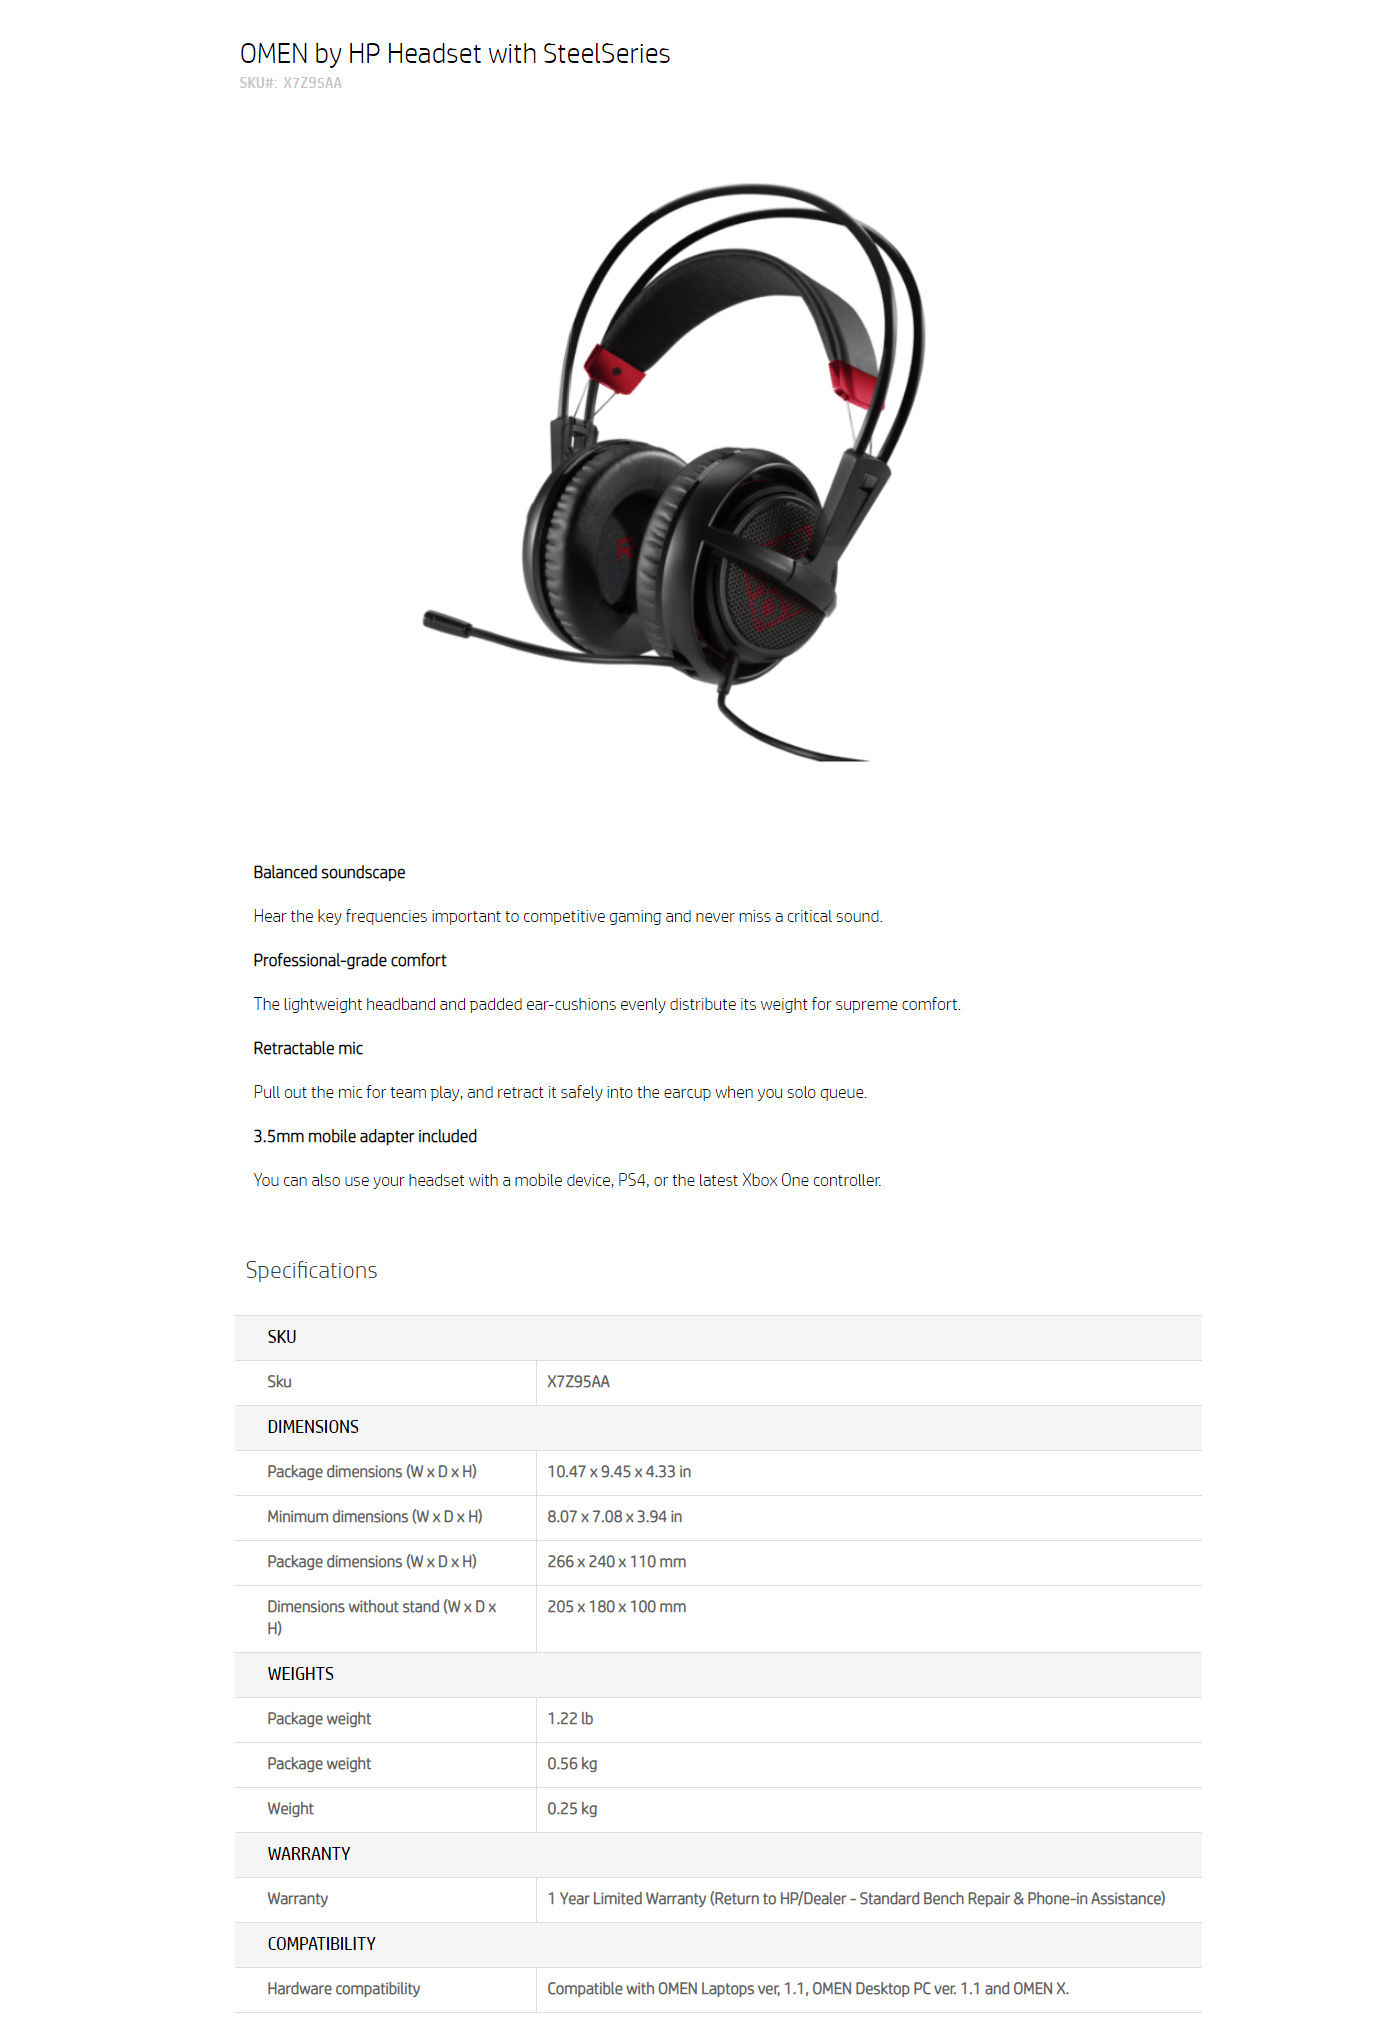  Buy Online HP OMEN Headset SteelSeries (X7Z95AA)